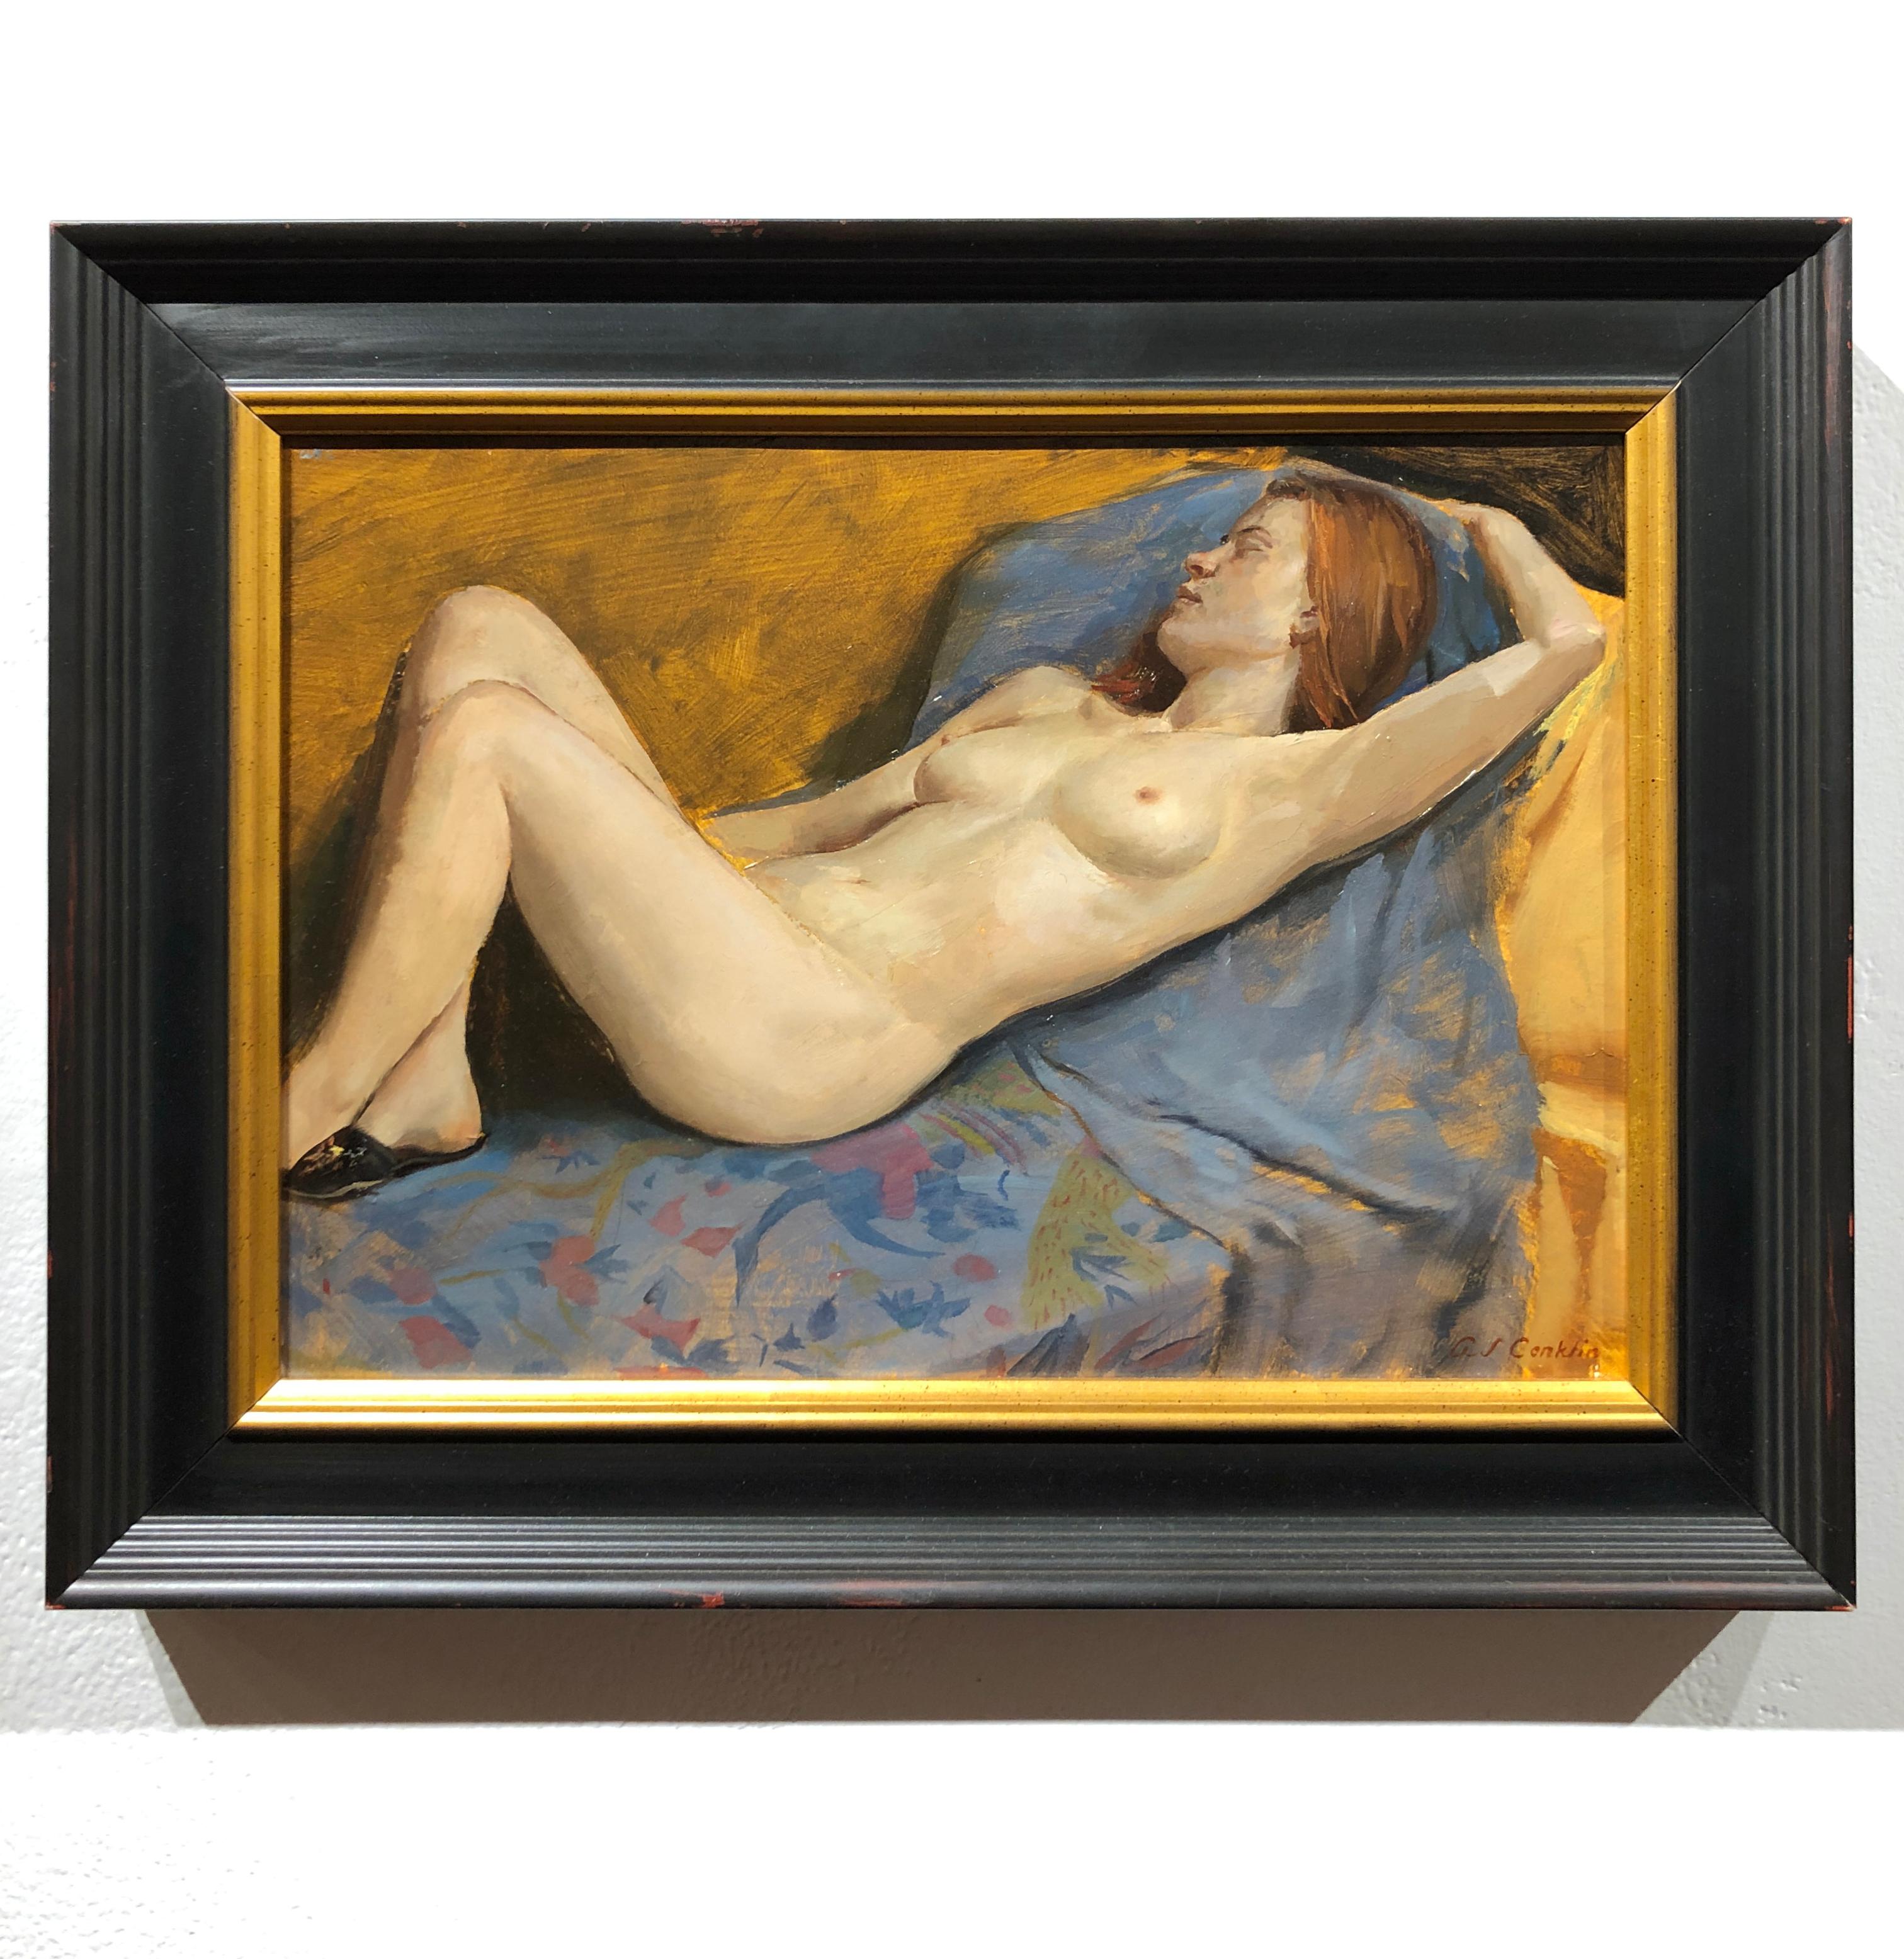 Maureen Liegesessel – Original Ölgemälde, Akt, weiblicher Akt in Sesseln, üppige Stoffe – Painting von Andrew S. Conklin